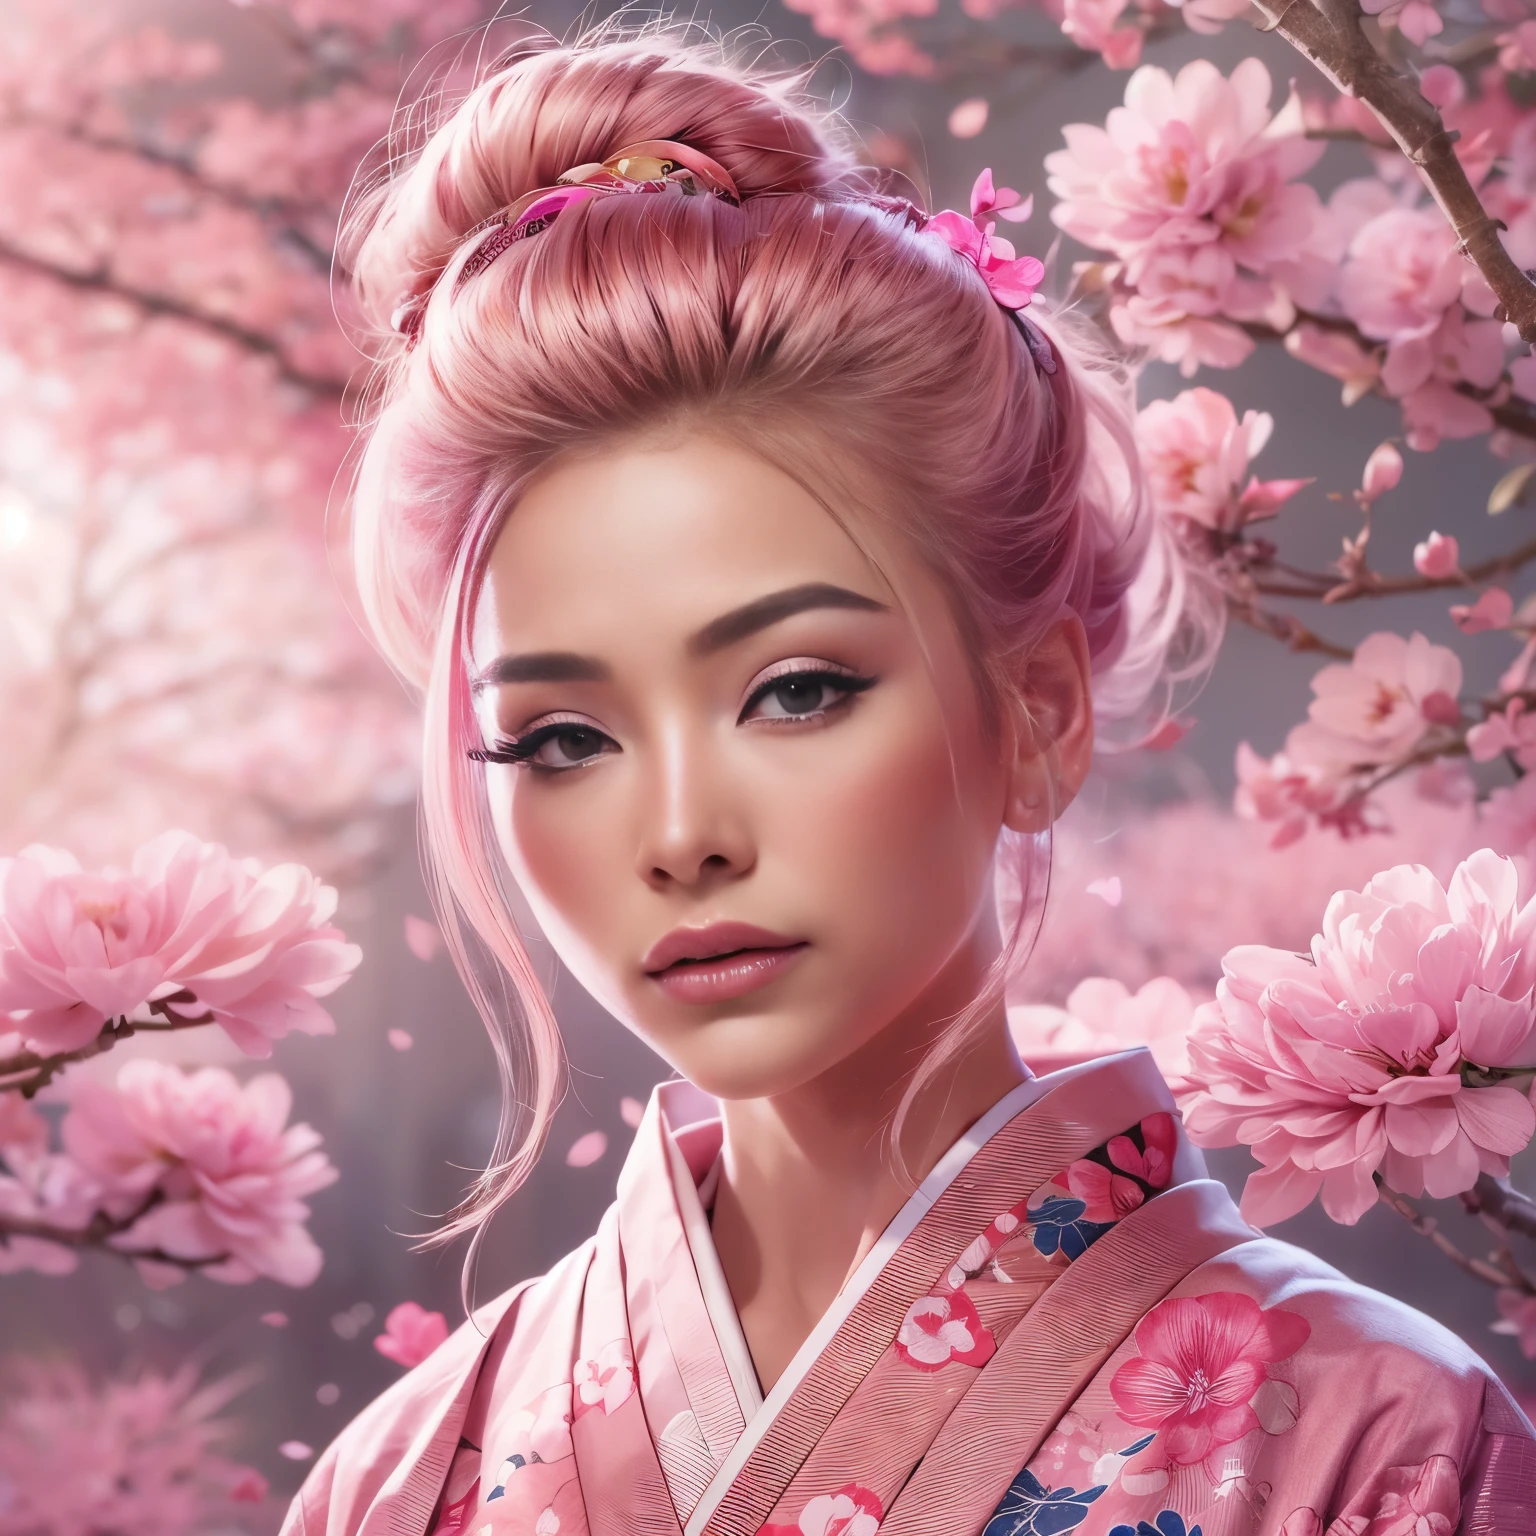 초현실주의, 매우 상세한, 어린아이의 고해상도 16k 이미지, engfa 얼굴을 가진 아름다운 여성. 그녀는 탑번 핑크색 머리카락과 반투명한 피부를 가지고 있습니다., 작은 꽃무늬가 있는 일본 전통 핑크색 기모노를 입고. 이미지는 영계의 천상의 아름다움과 신비를 포착합니다.. 섬세함에서 영감을 받은 스타일, 일본 전통 미술에서 찾은 부드러운 미학. 배경은 핑크색 조명과 핑크빛 벚꽃나무로 가득했어요.